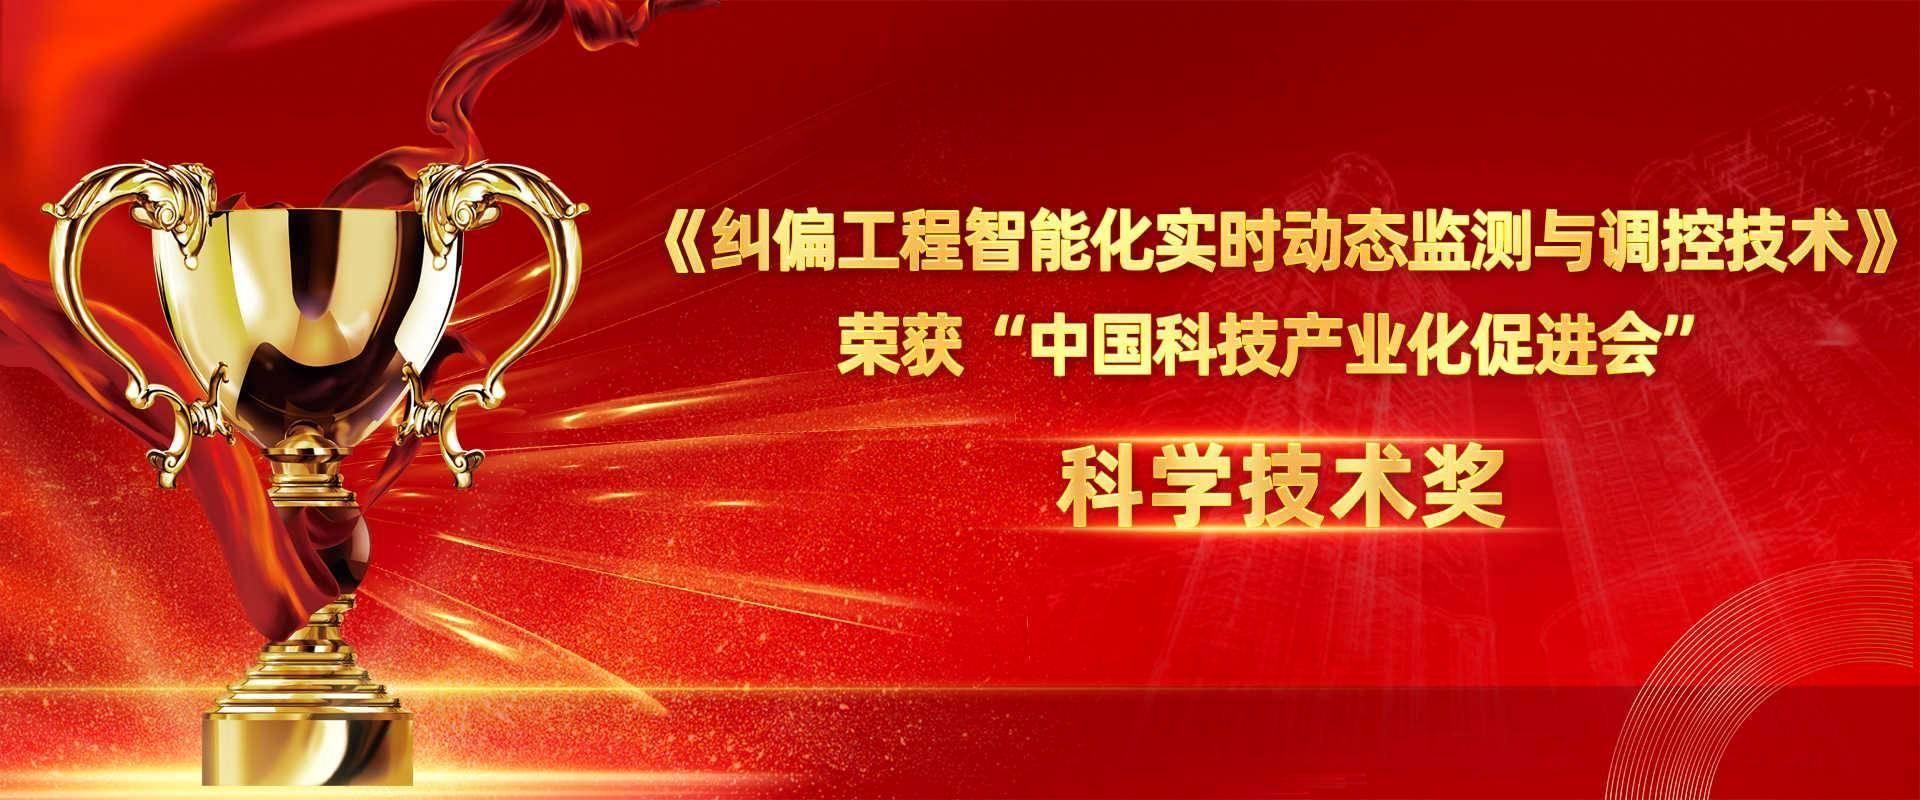 江苏九游J9特种技术工程有限公司荣获中国科技产业化促进会科技创新二等奖